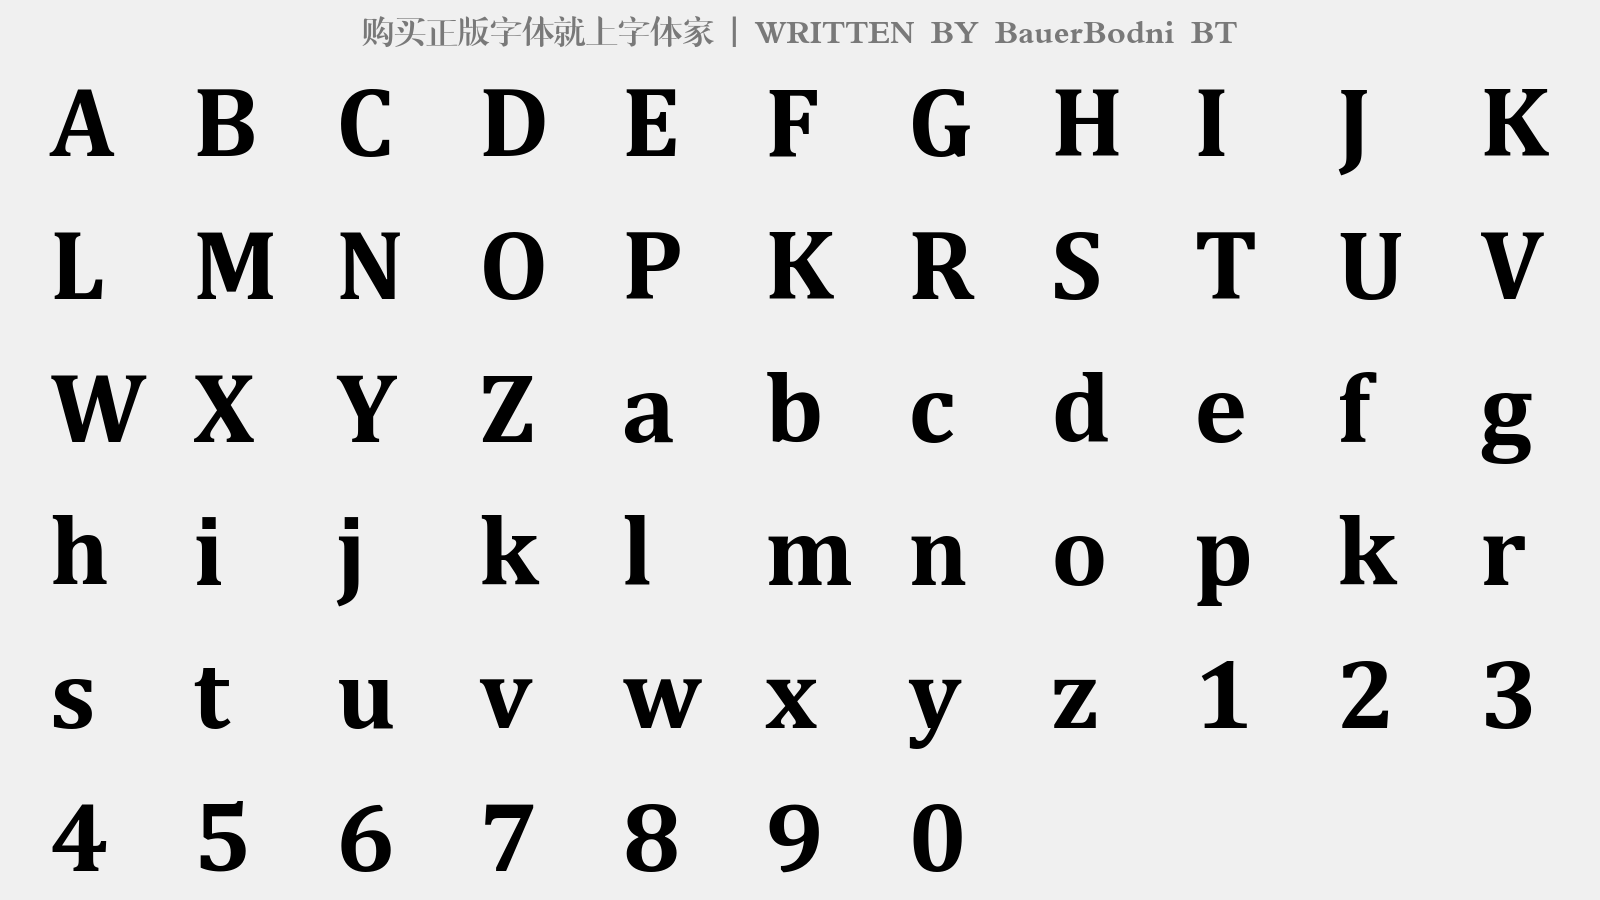 BauerBodni BT - 大写字母/小写字母/数字